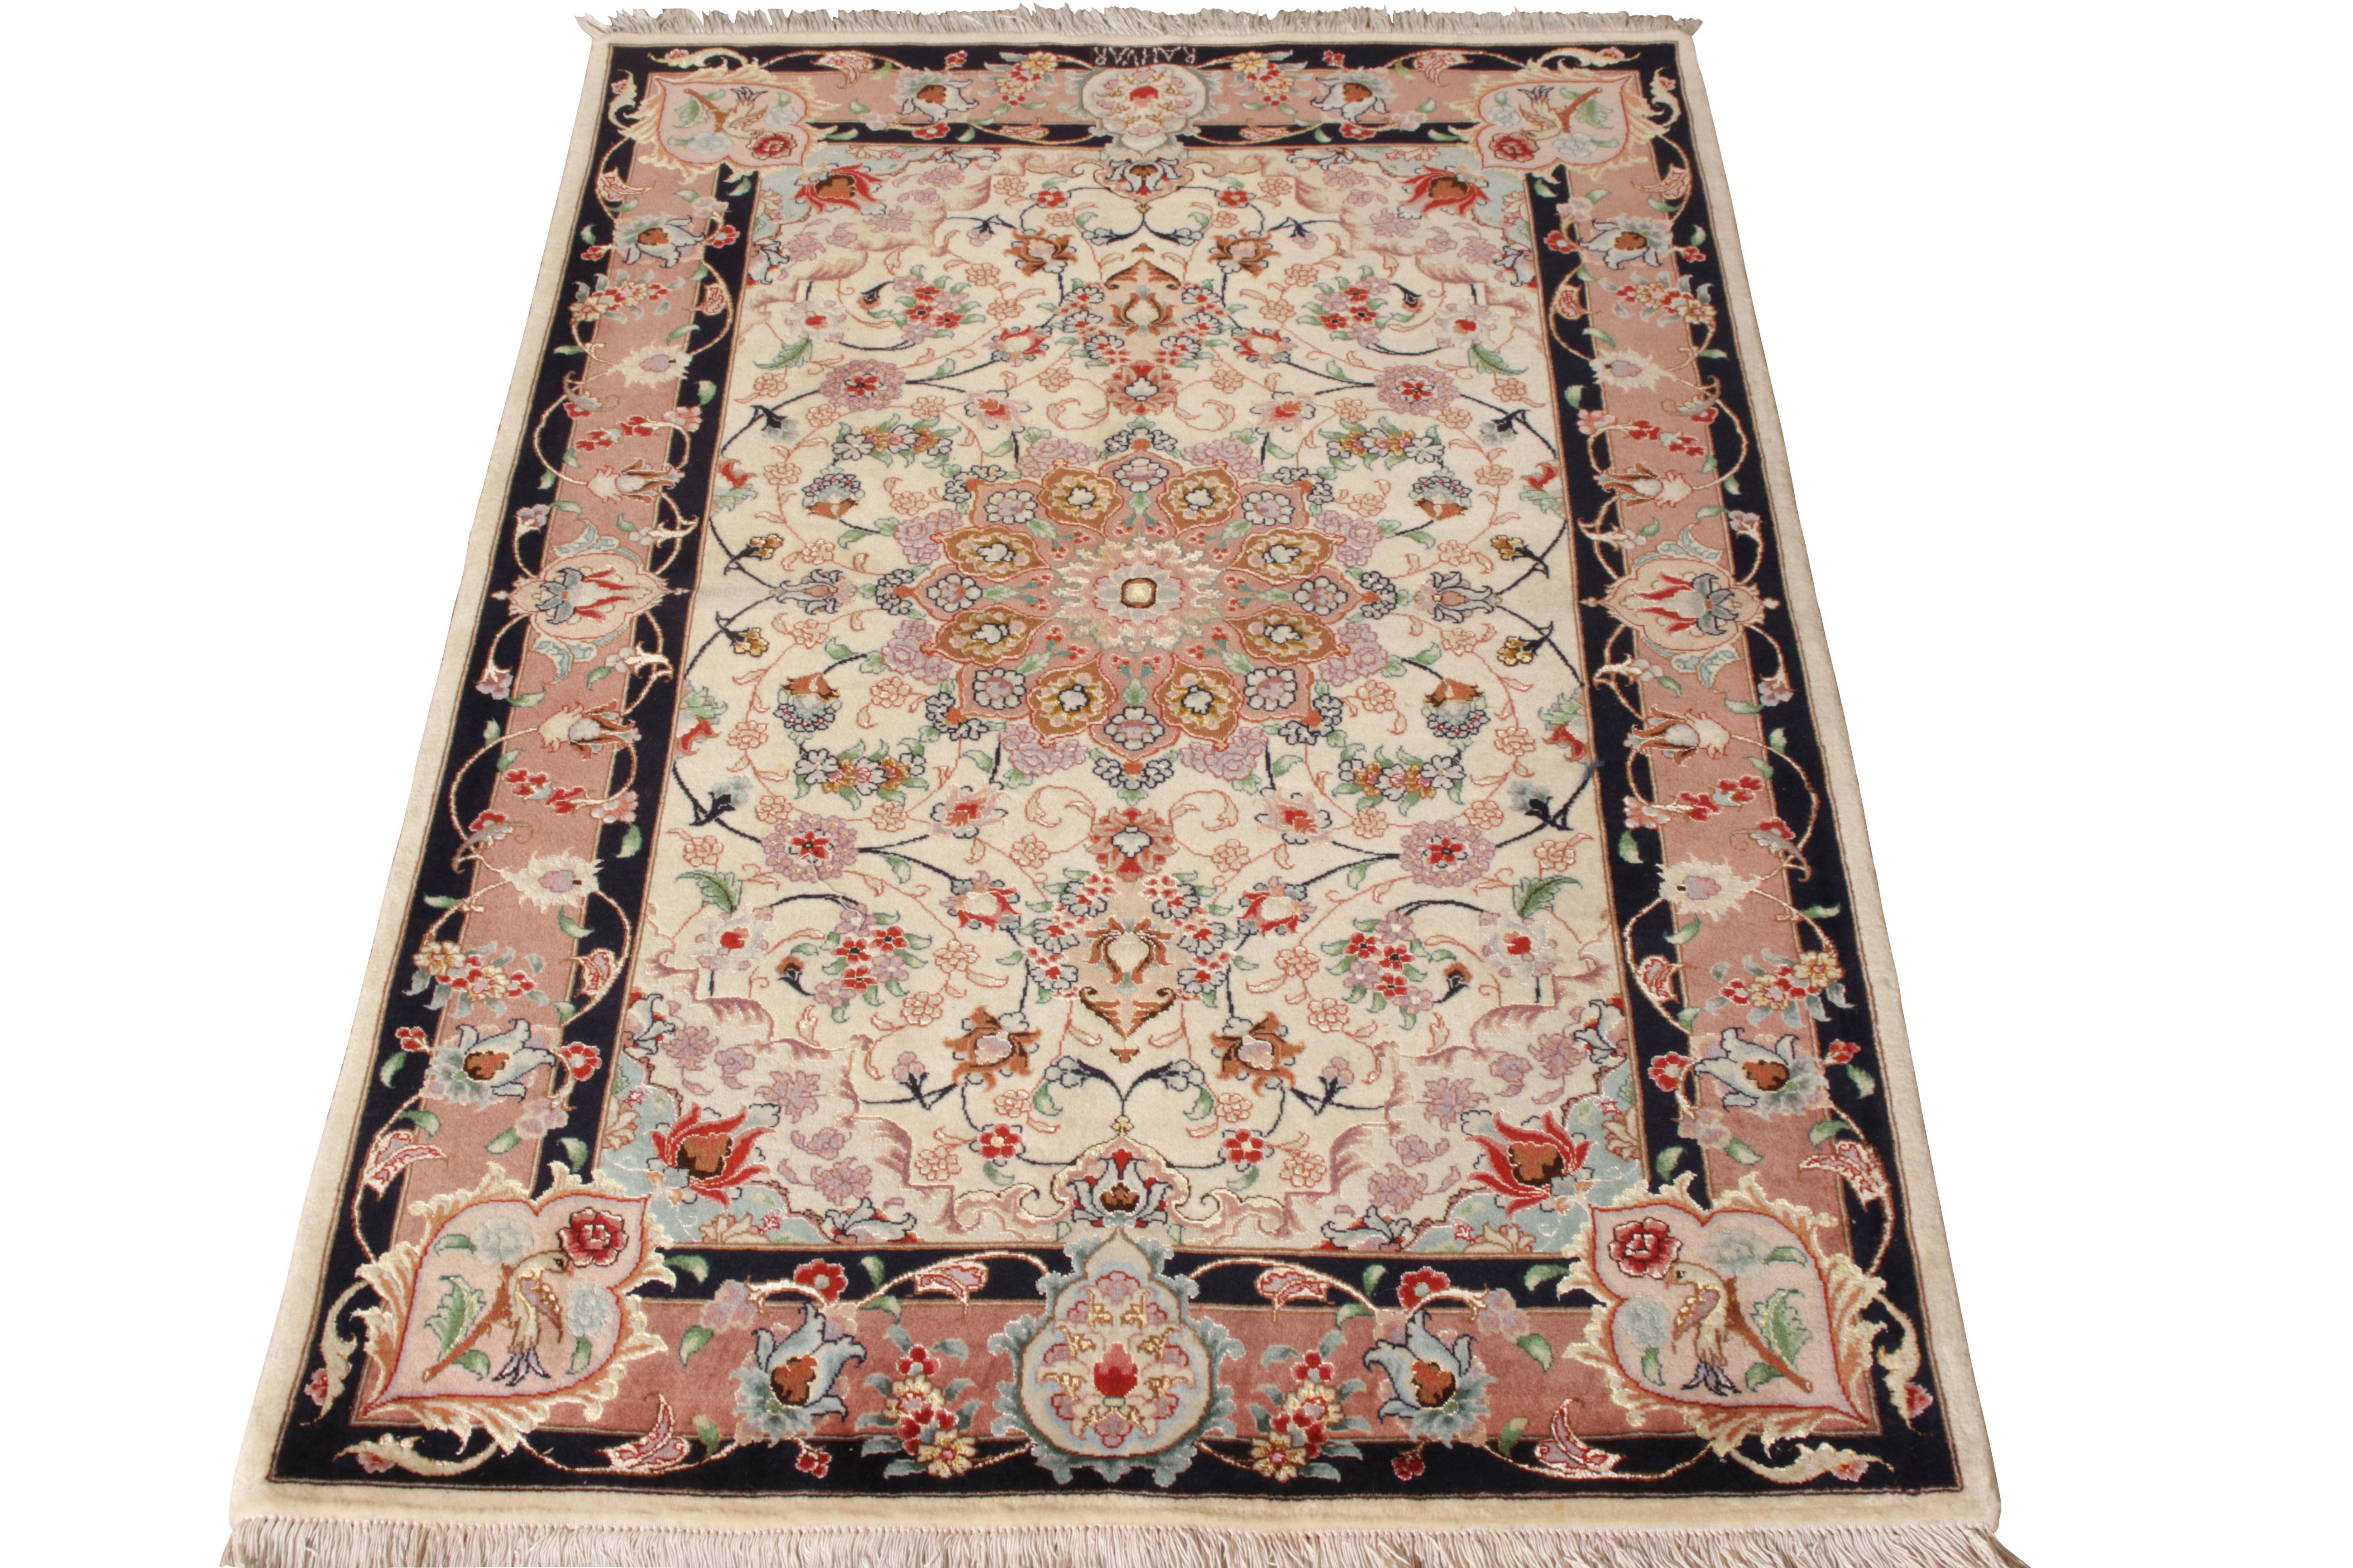 Un tapis 3x5 en soie nouée à la main qui rejoint les sélections persanes distinguées du milieu du siècle dans la collection Antique & Vintage de Rug & Kilim. Datant d'environ 1950-1960, ce tapis Tabriz particulier présente une gamme de couleurs